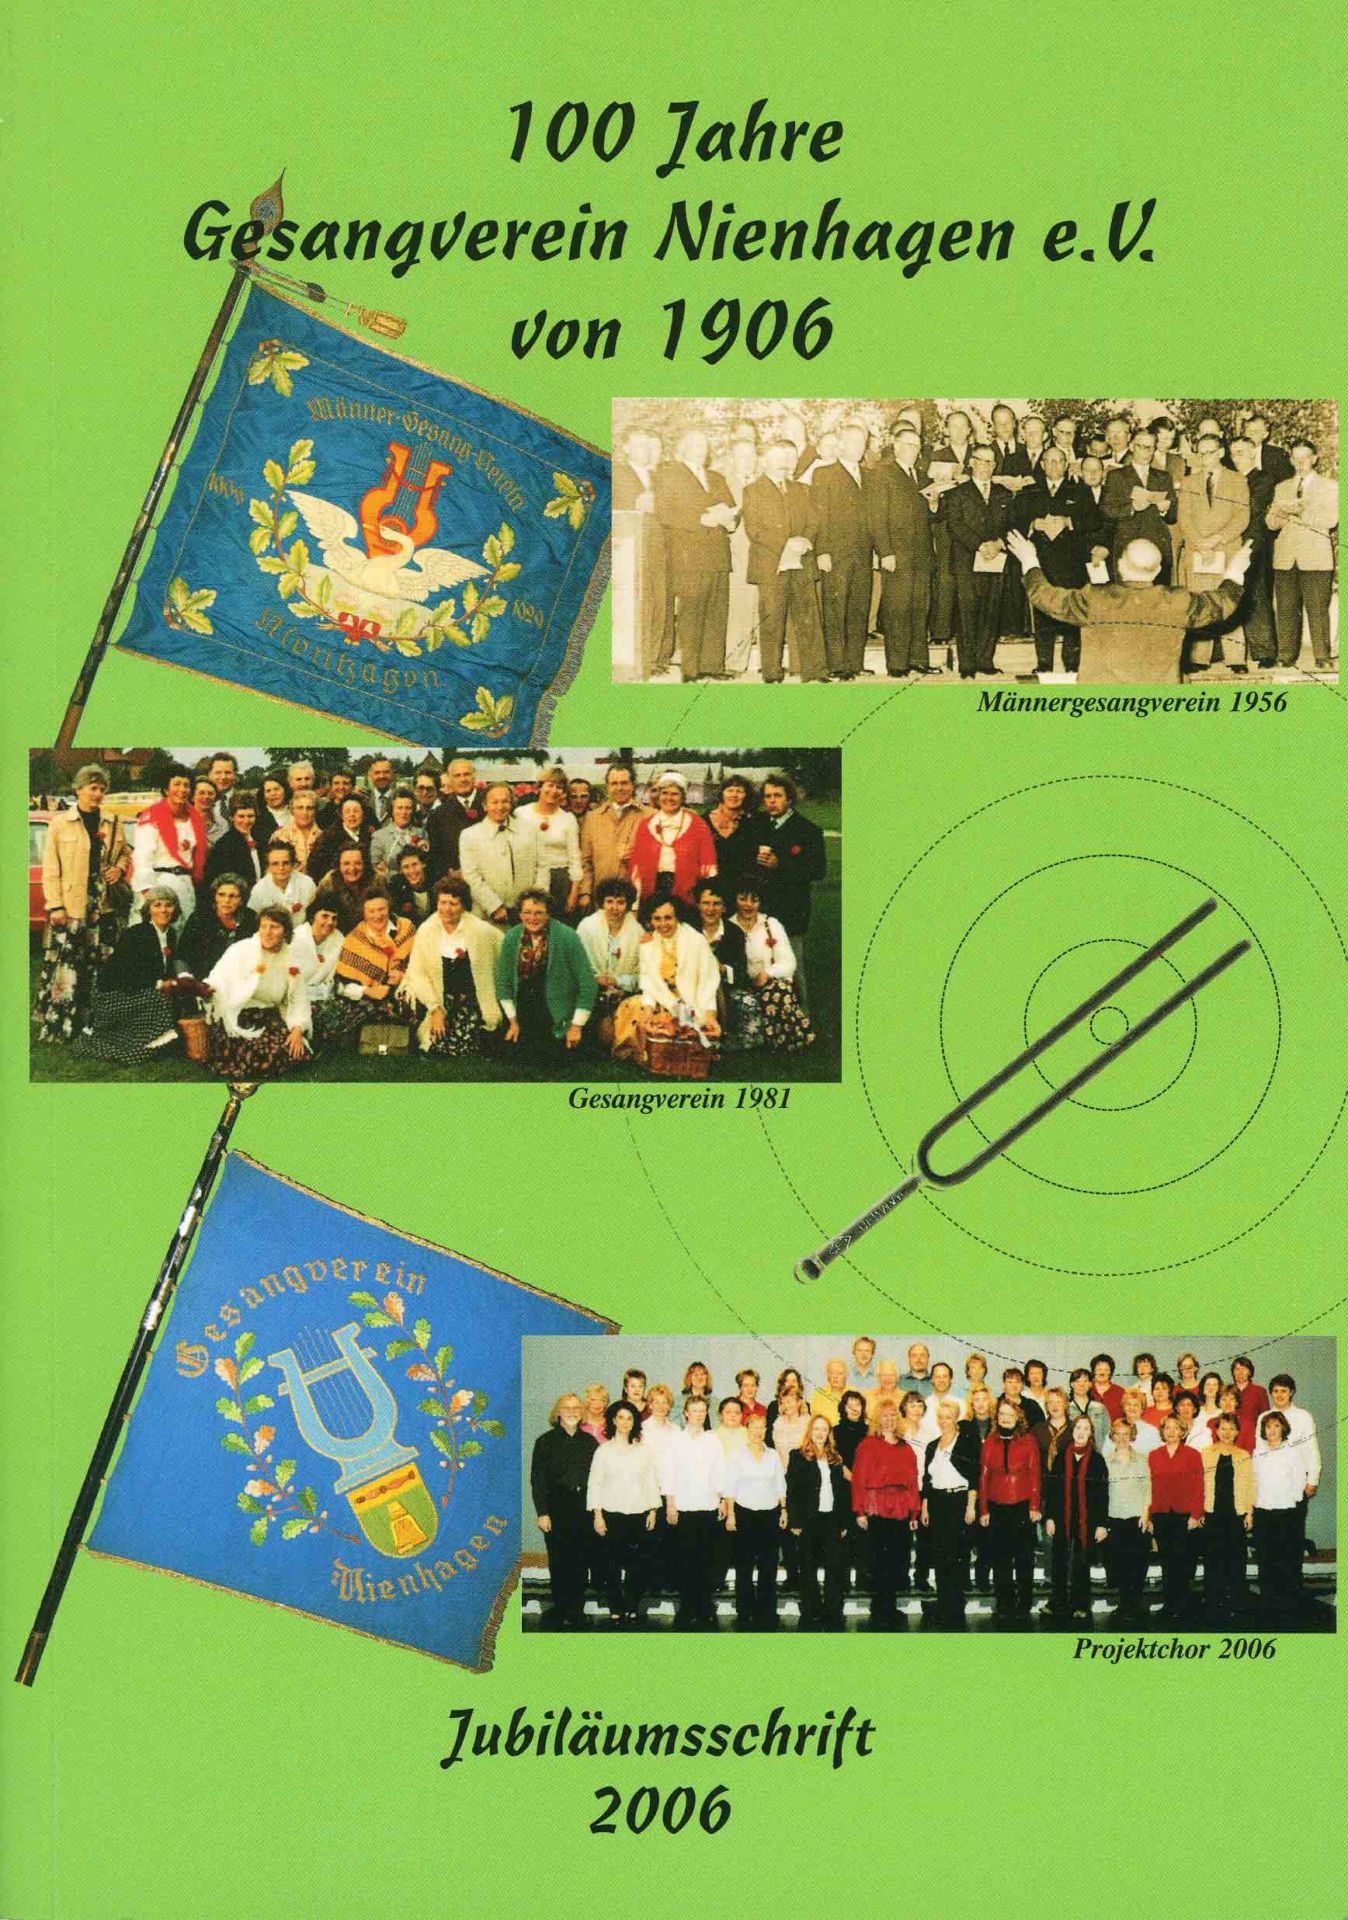 100 Jahre Gesangverein Nienhagen von 1906 e.V.